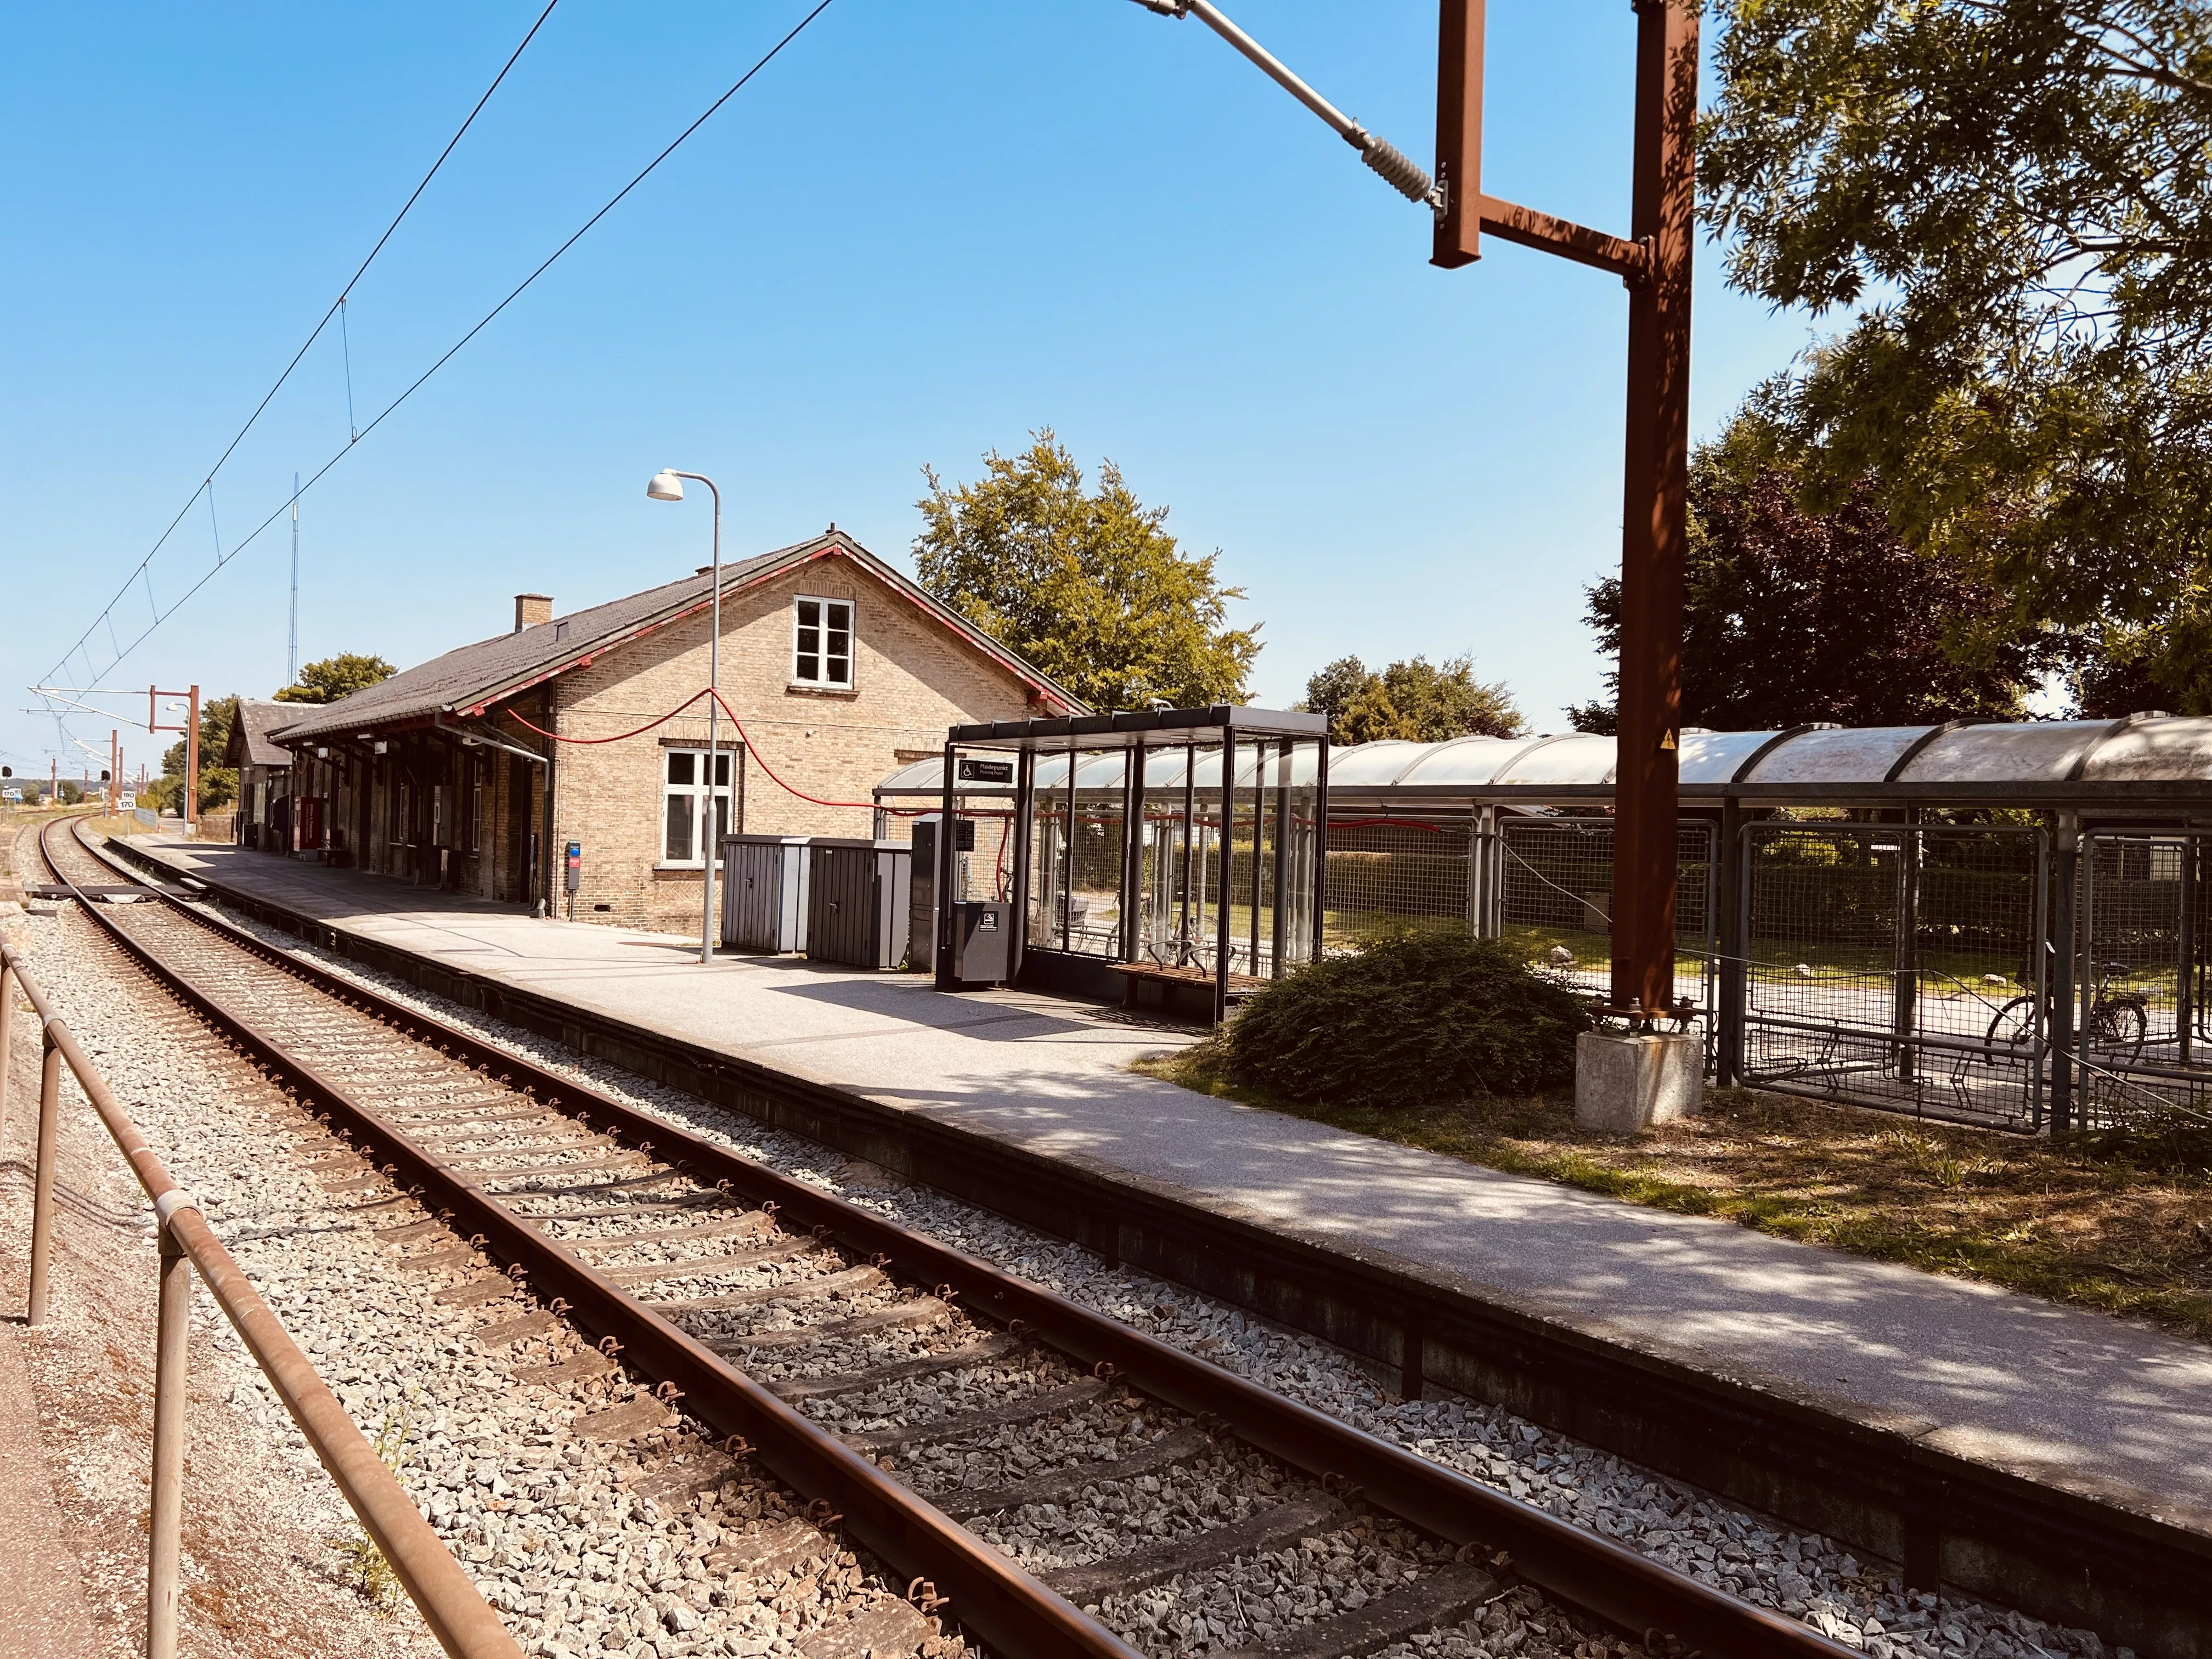 Billede af Holme-Olstrup Station.